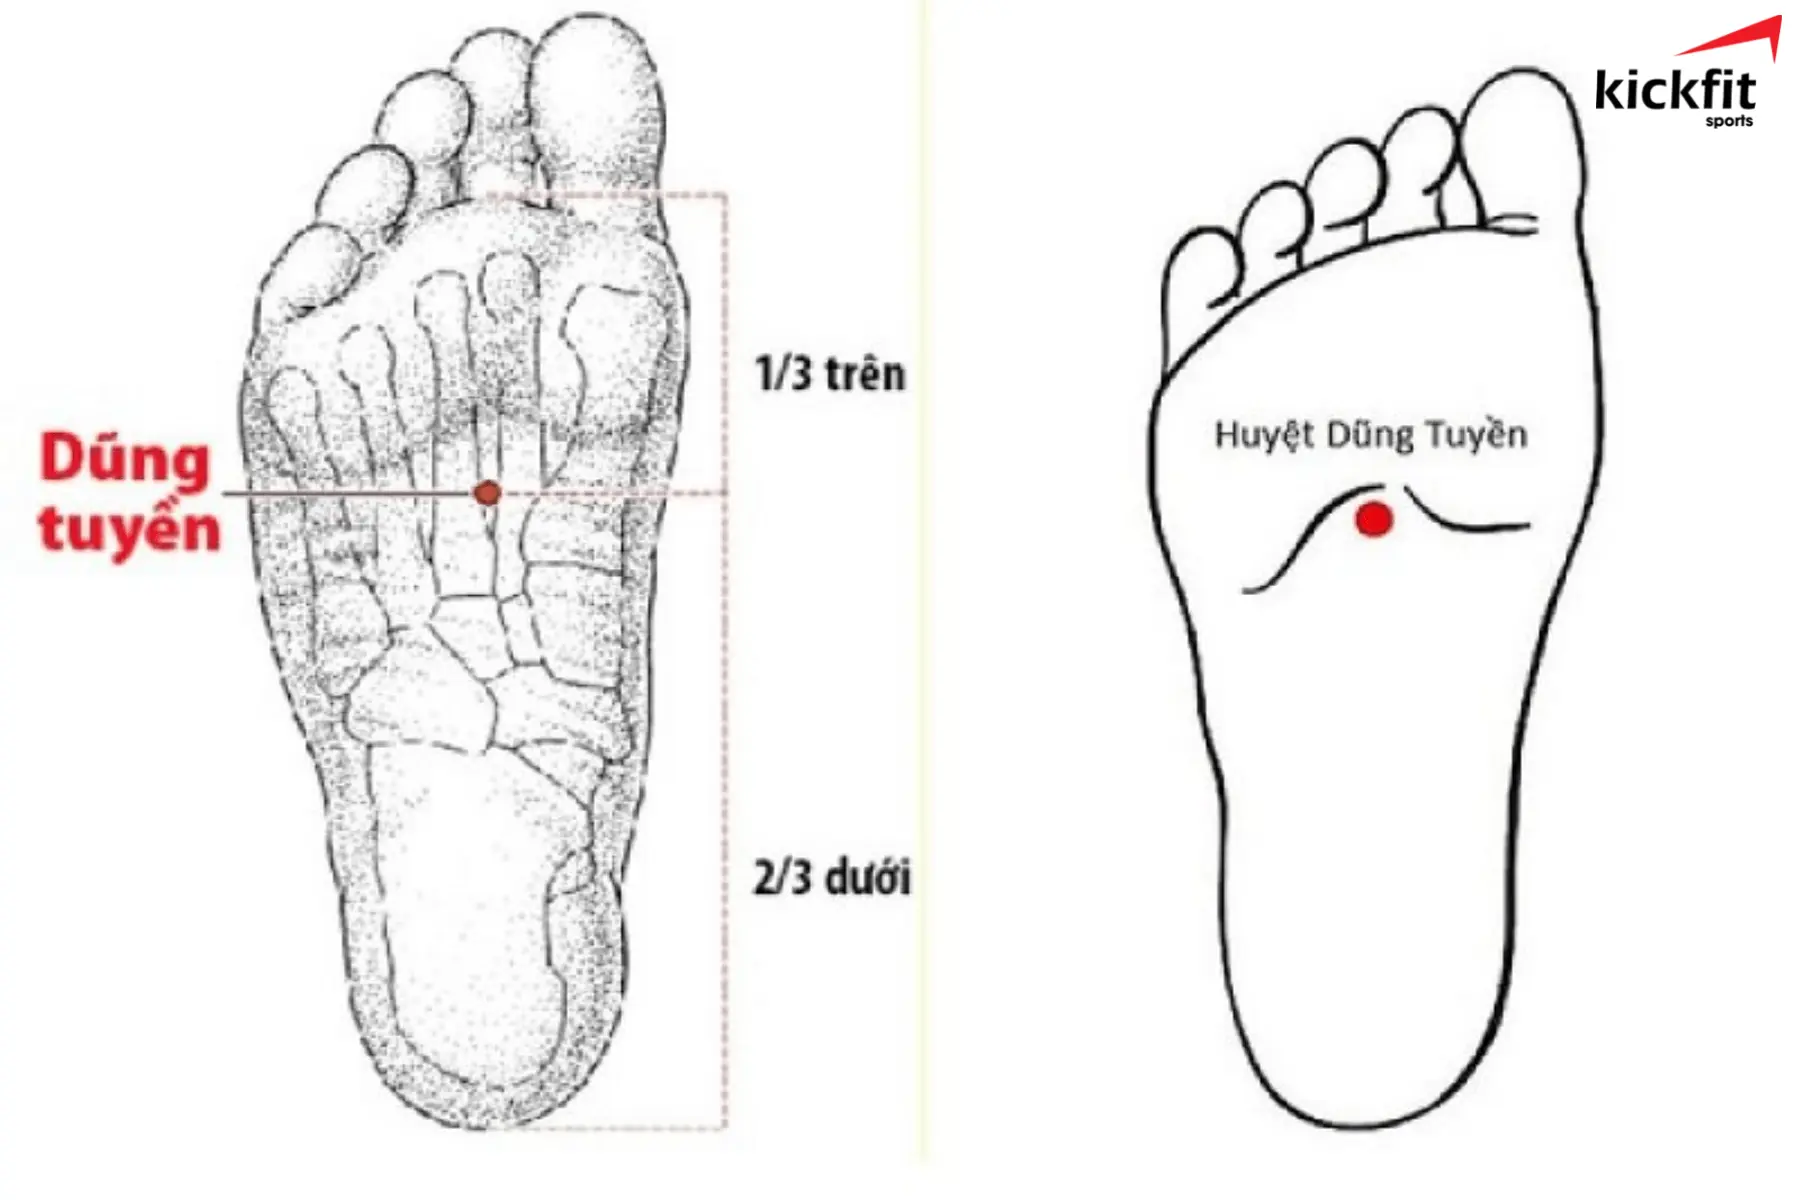 Dũng Tuyền là huyệt quan trọng nằm chính giữa lòng bàn chân